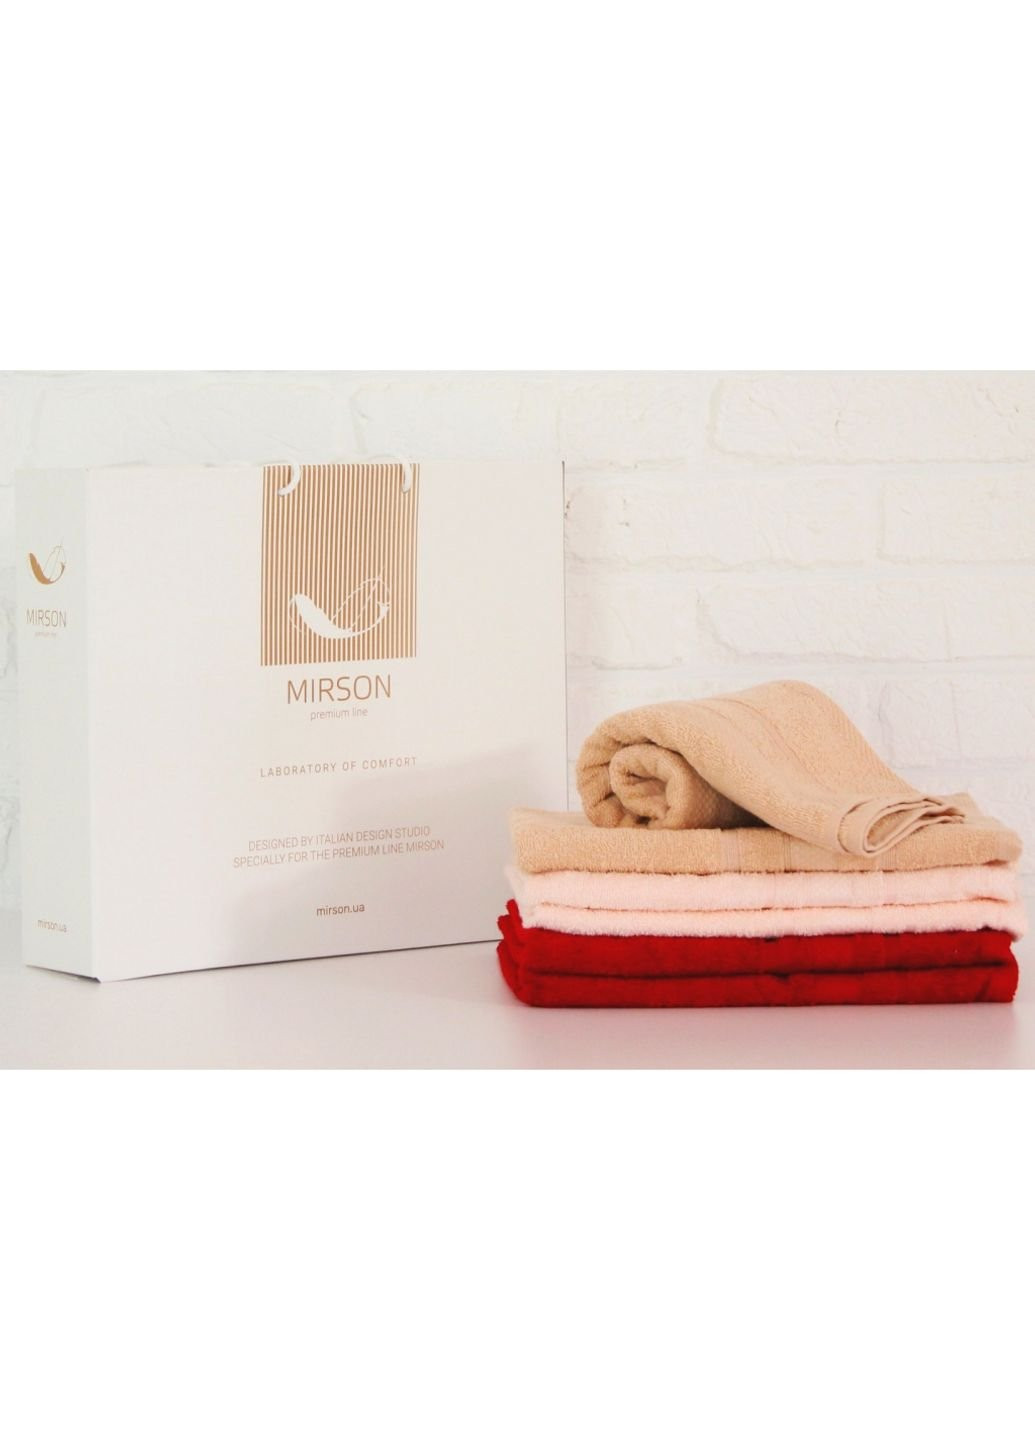 Mirson полотенце набор банных №5099 elite softnes marvelous 70х140 6 шт (2200003525731) комбинированный производство - Украина